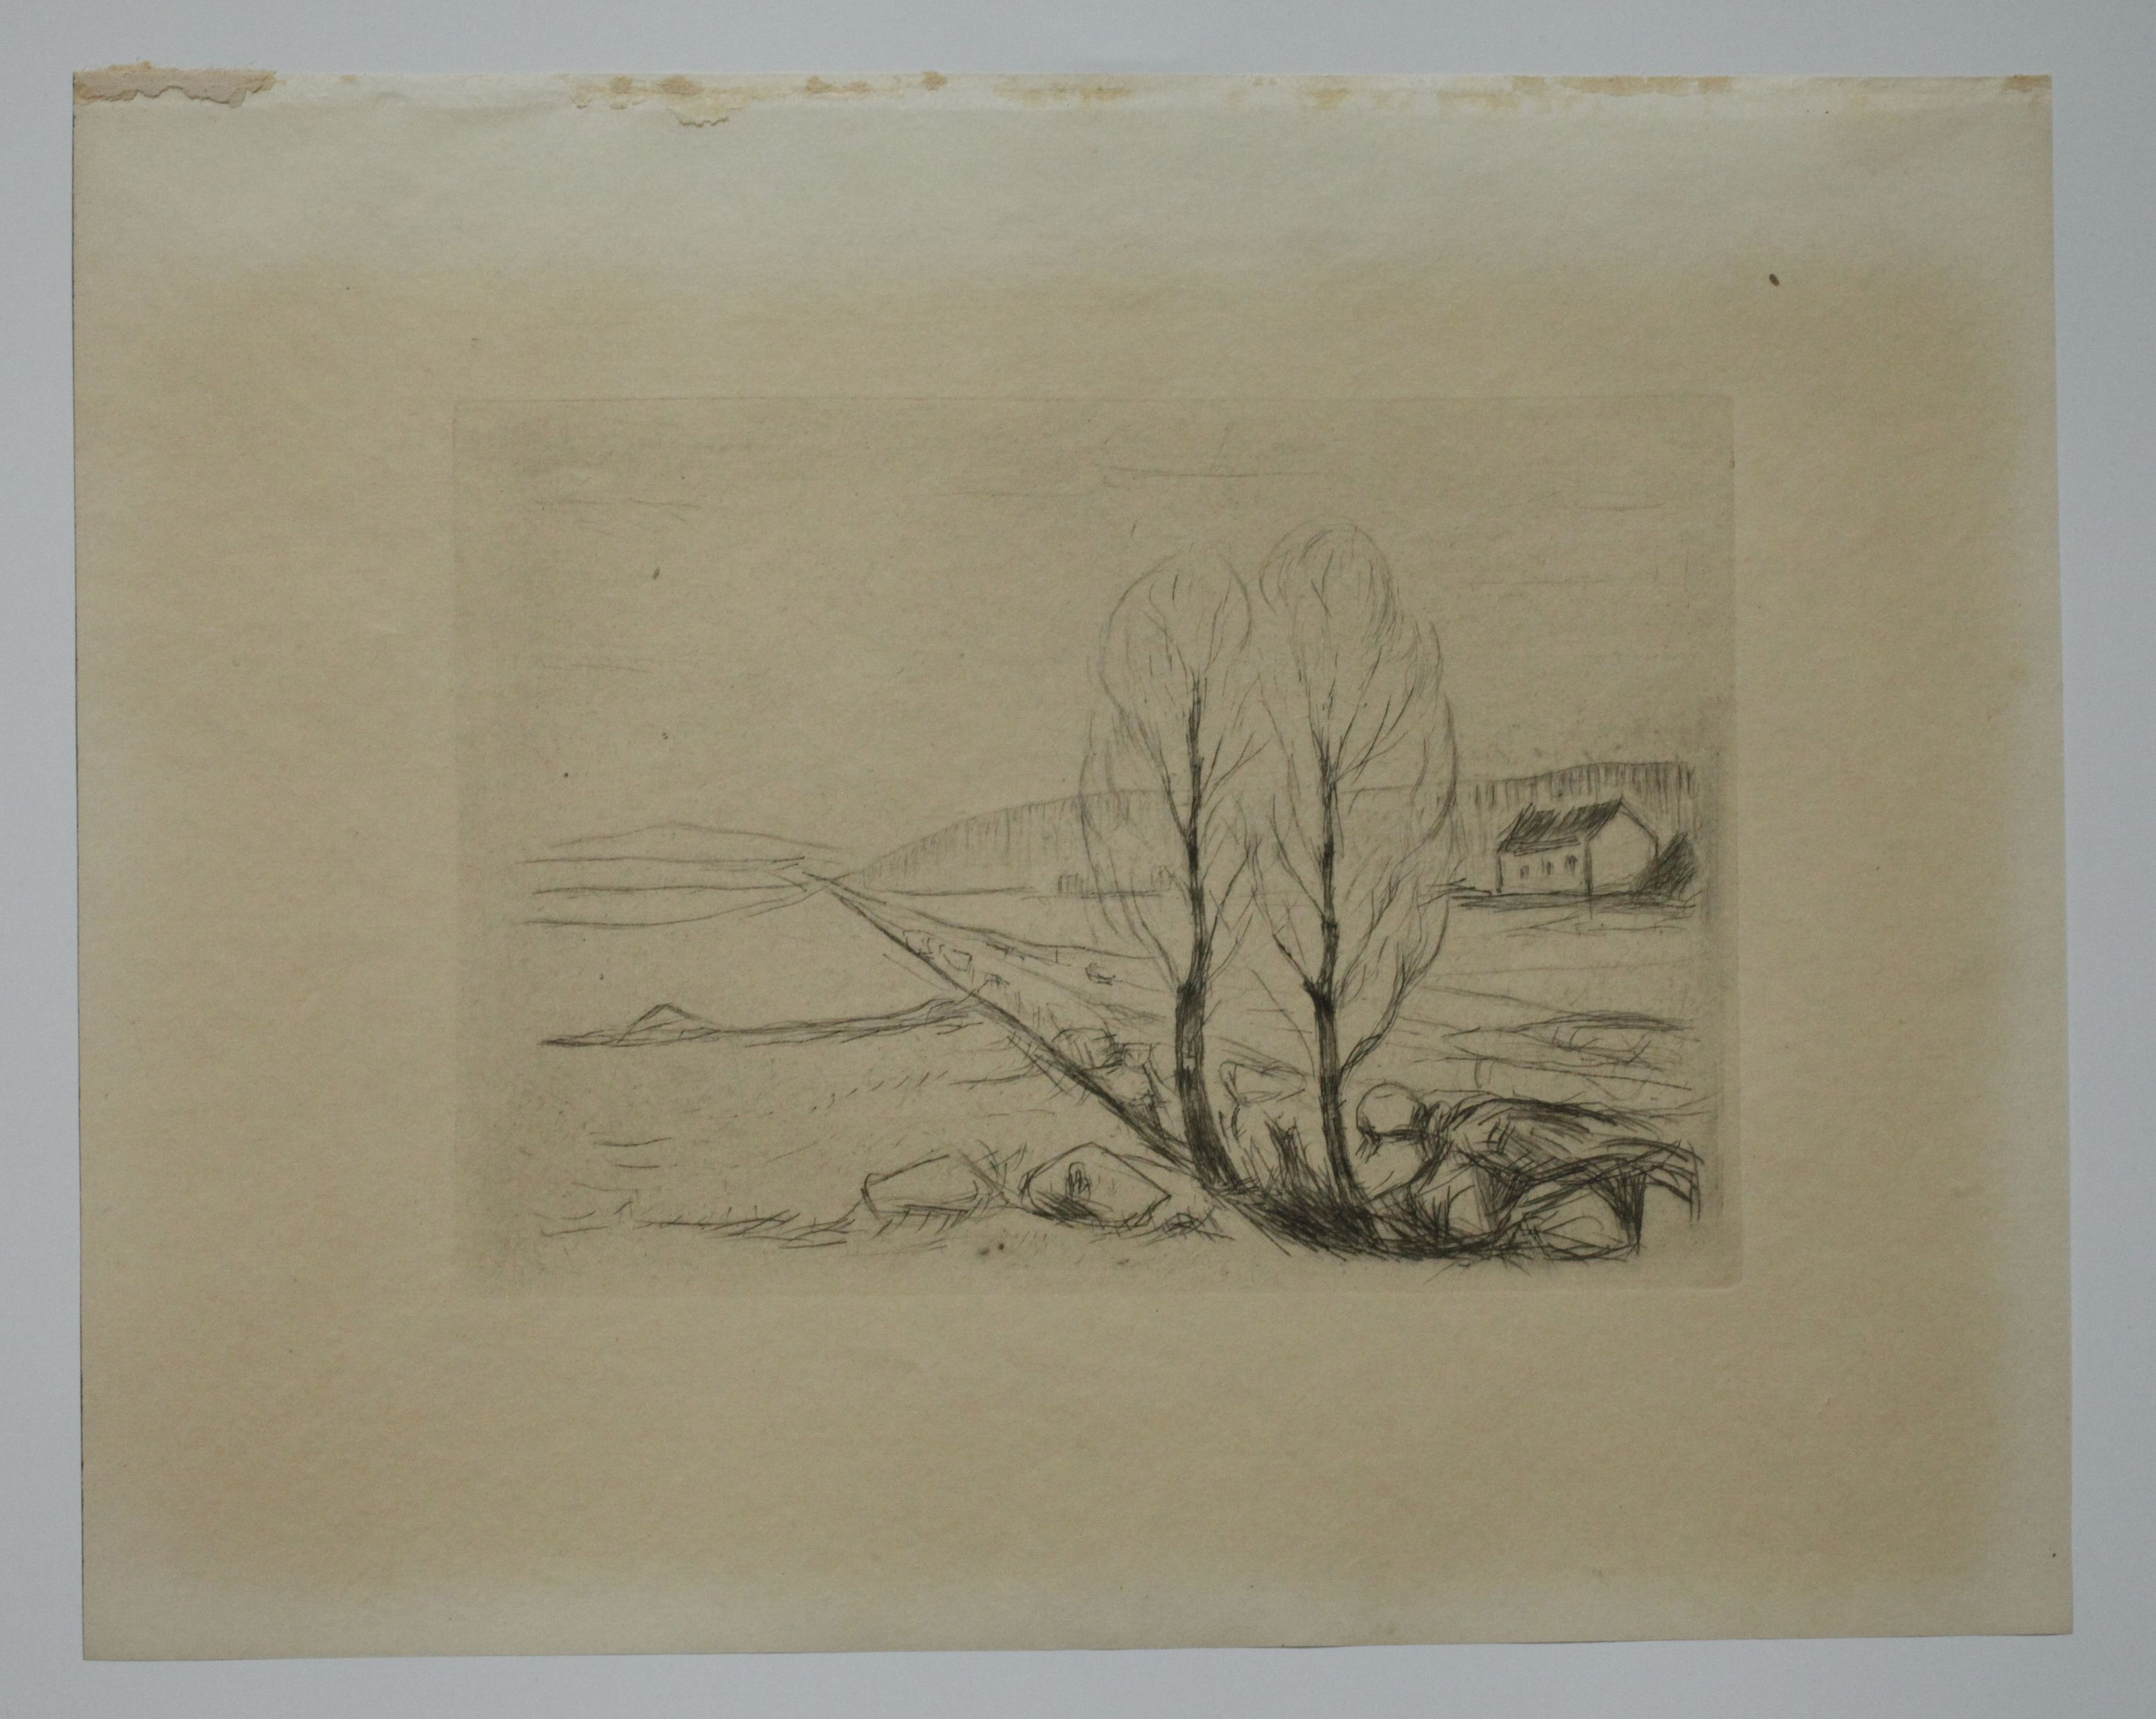 Edvard Munch, "Norwegian Landscape" - Image 4 of 6